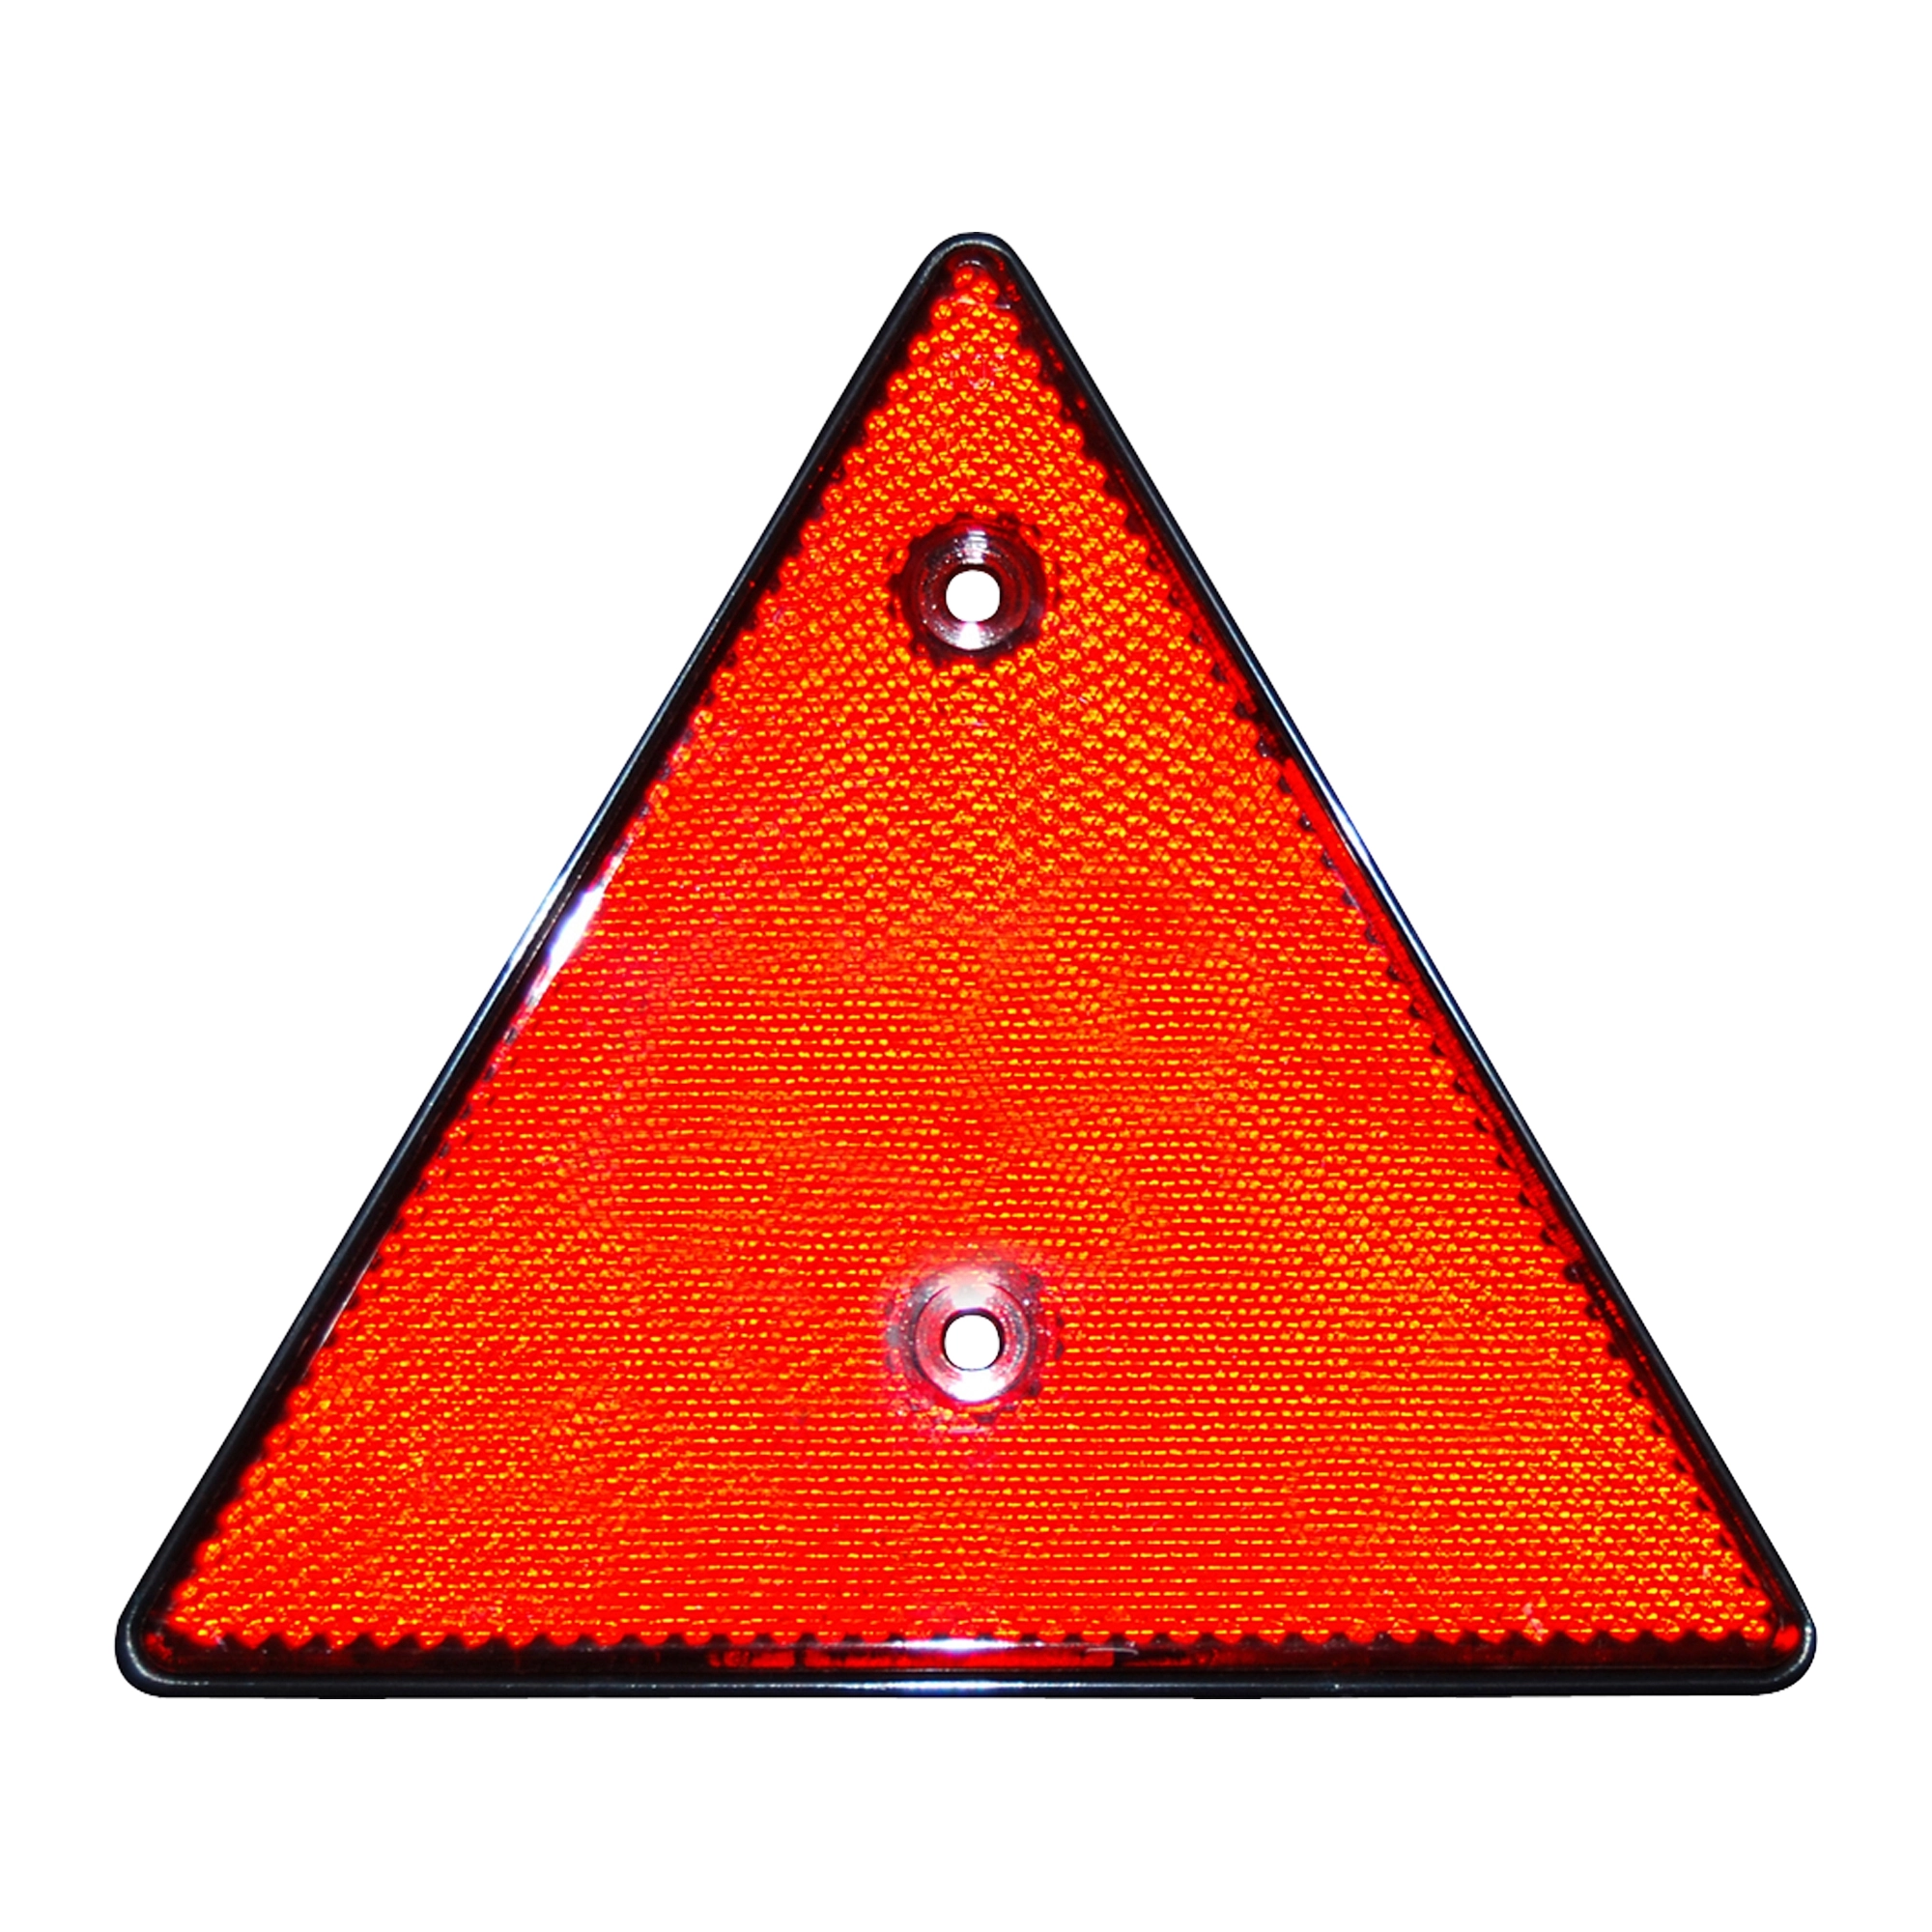 Eacalyc anhänger rote dreieck reflektoren für tor pfosten, hintere  reflektoren angeschraubt, dreieck reflektierend für anhänger